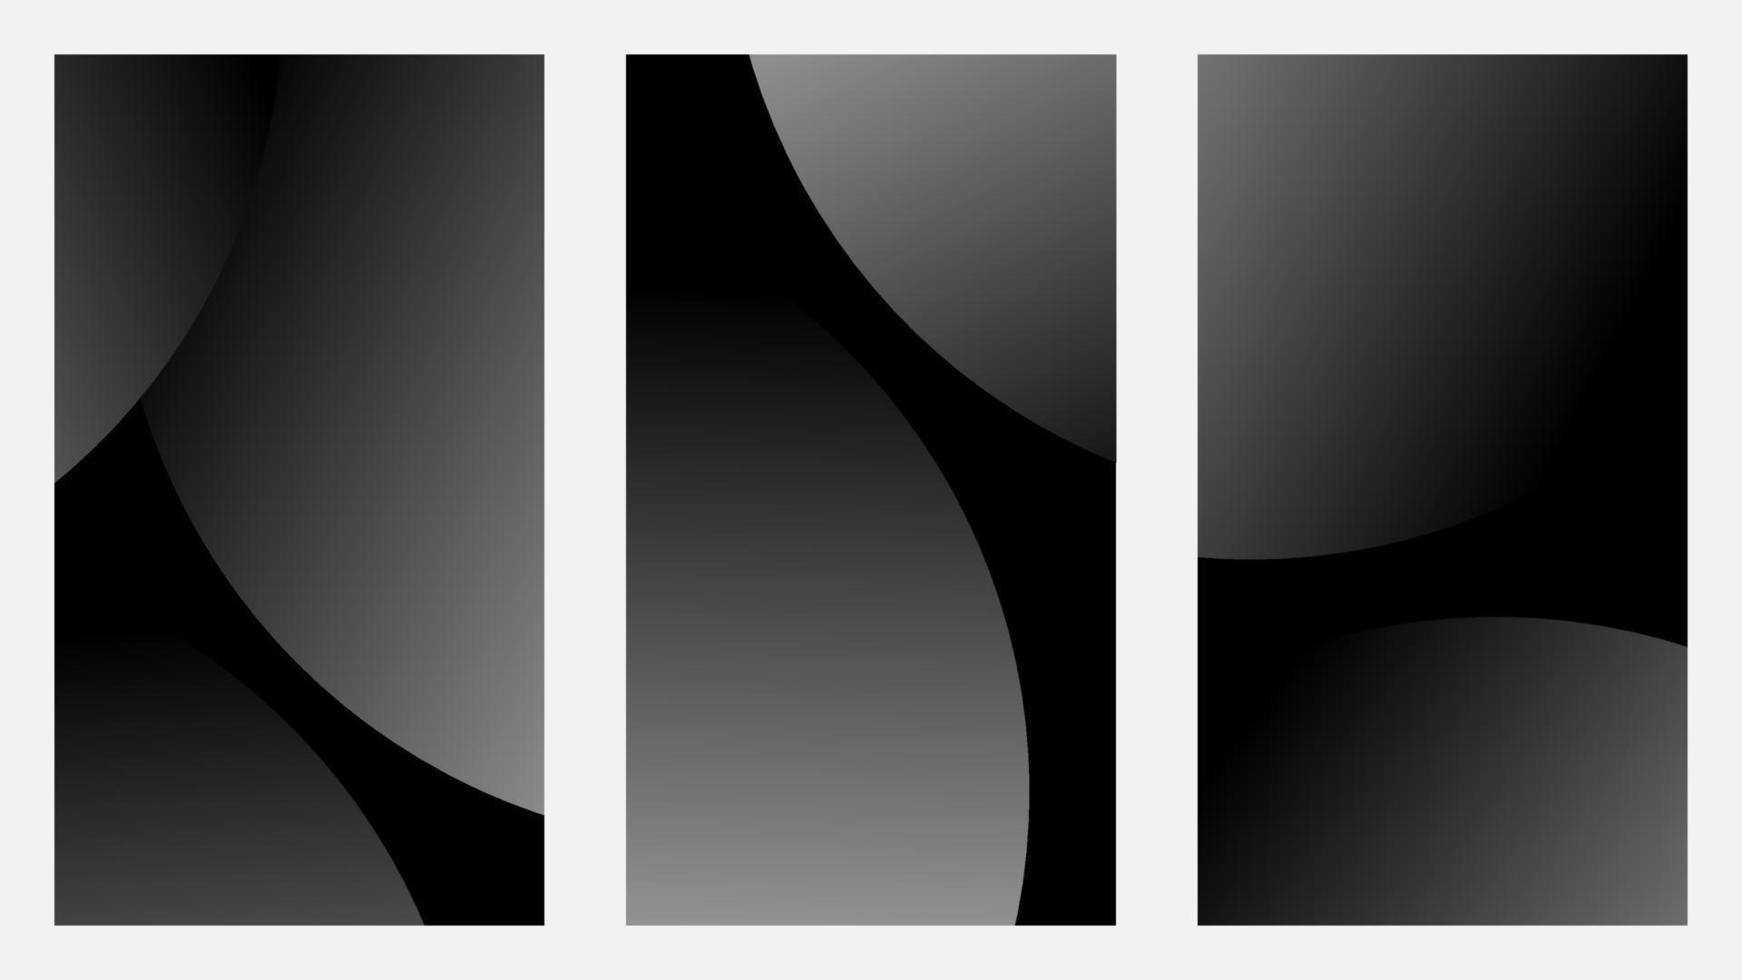 conception d'arrière-plan verticale minimale avec un cercle doux dégradé noir-blanc. modèle horizontal vectoriel pour bannières, invitations, publications minimales, affiches, certificats et liés à l'arrière-plan.